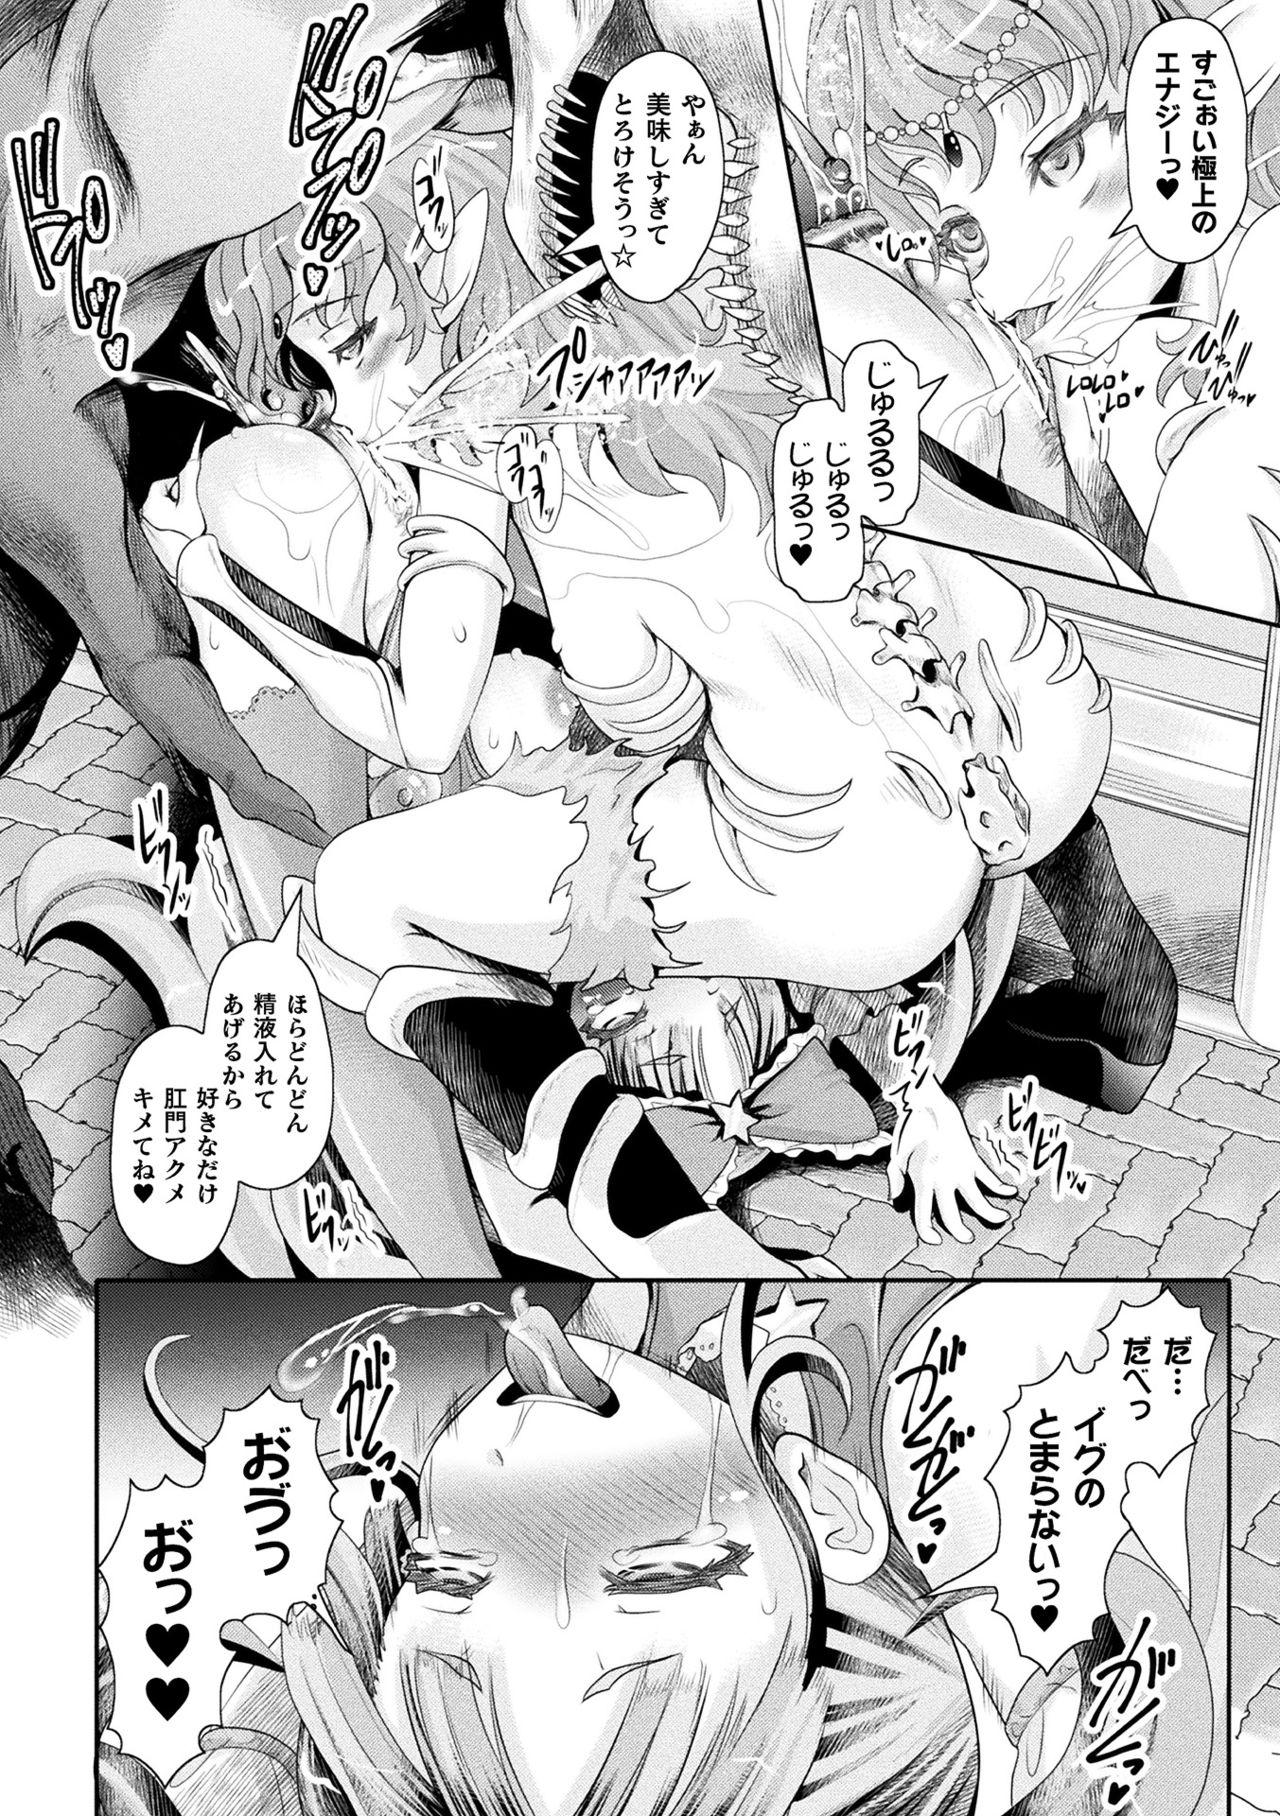 2D Comic Magazine Ketsuman Choukyou de Koumon Portio Acme! Vol. 2 45